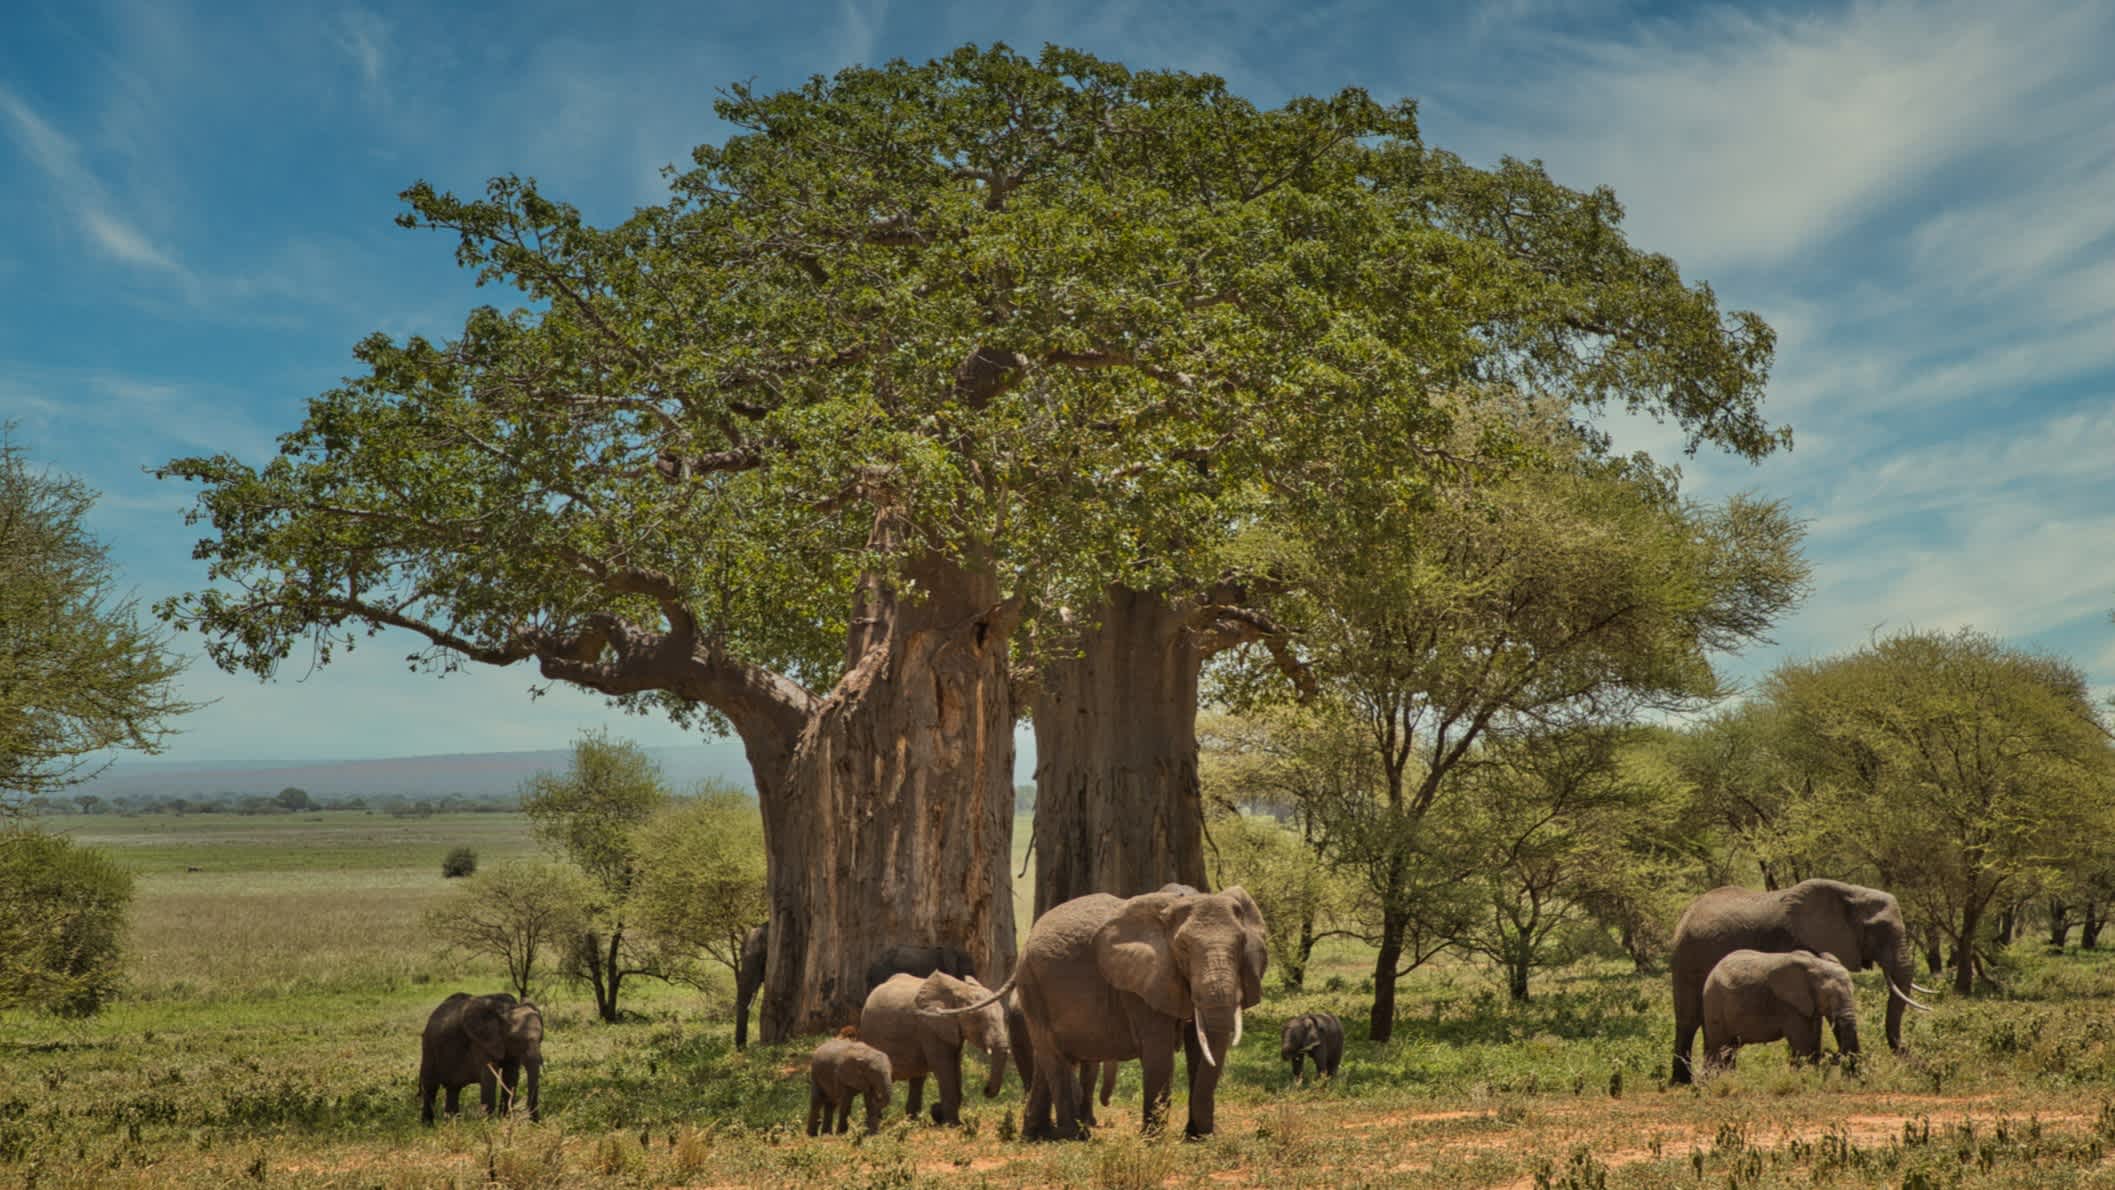 Baobab-Baum mit Elefanten in afrikanischer Landschaft